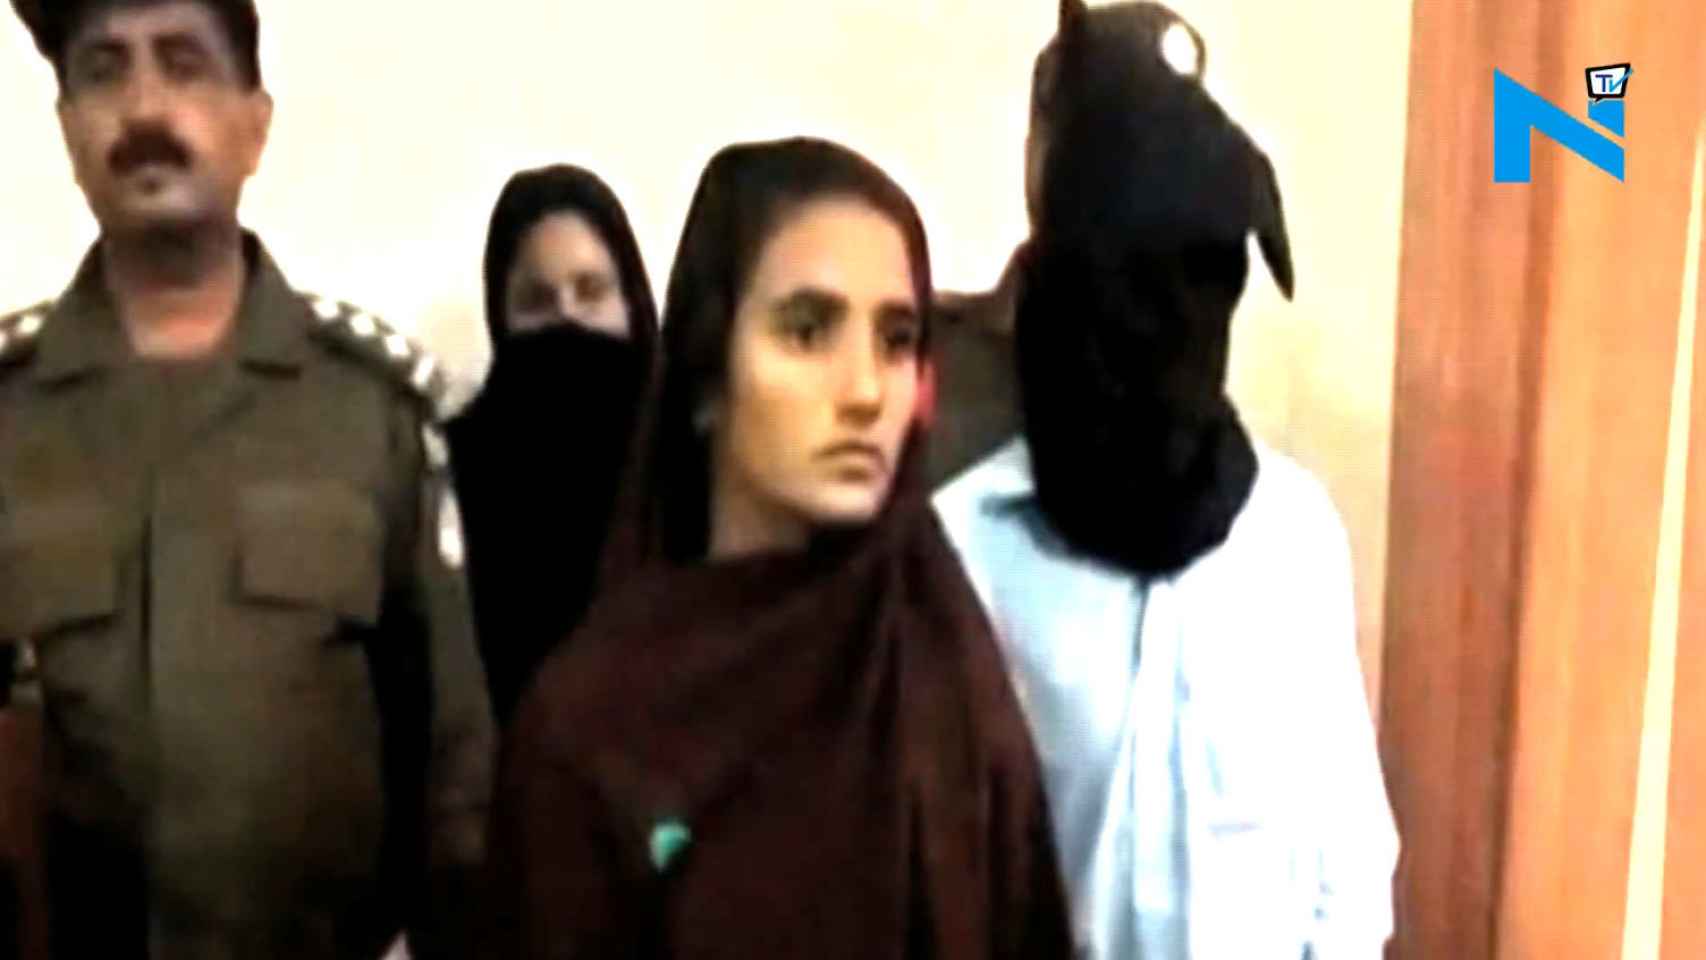 Aasia podría ser condenada a la pena de muerte en su país, Pakistán